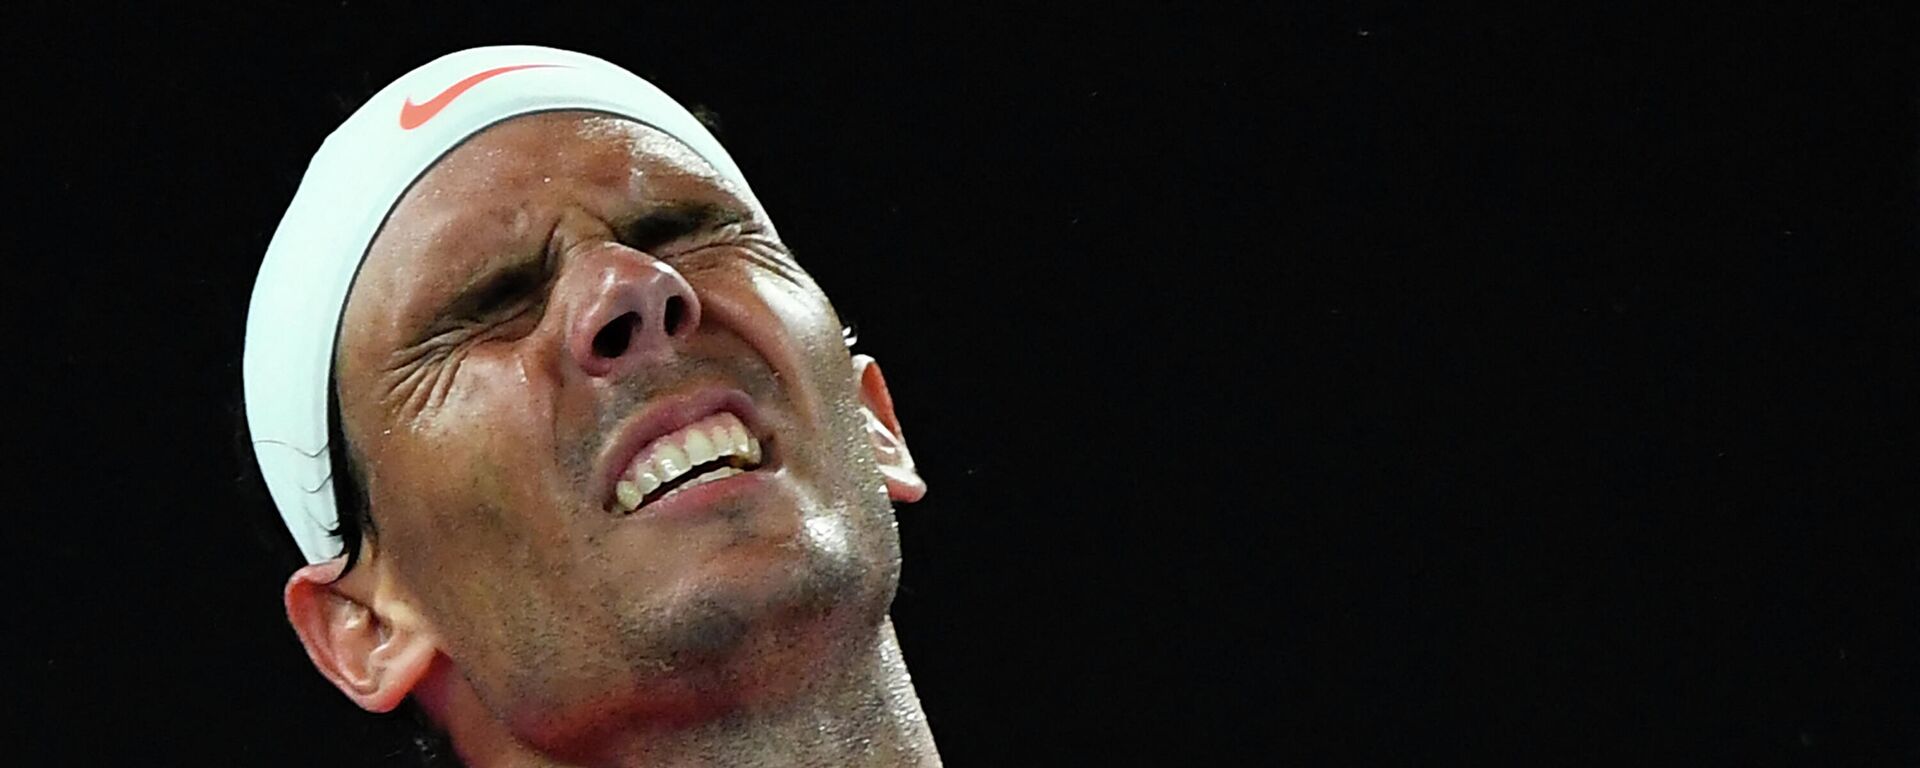 Rafael Nadal en los cuartos de final de Australia 2021 - Sputnik Mundo, 1920, 17.02.2021